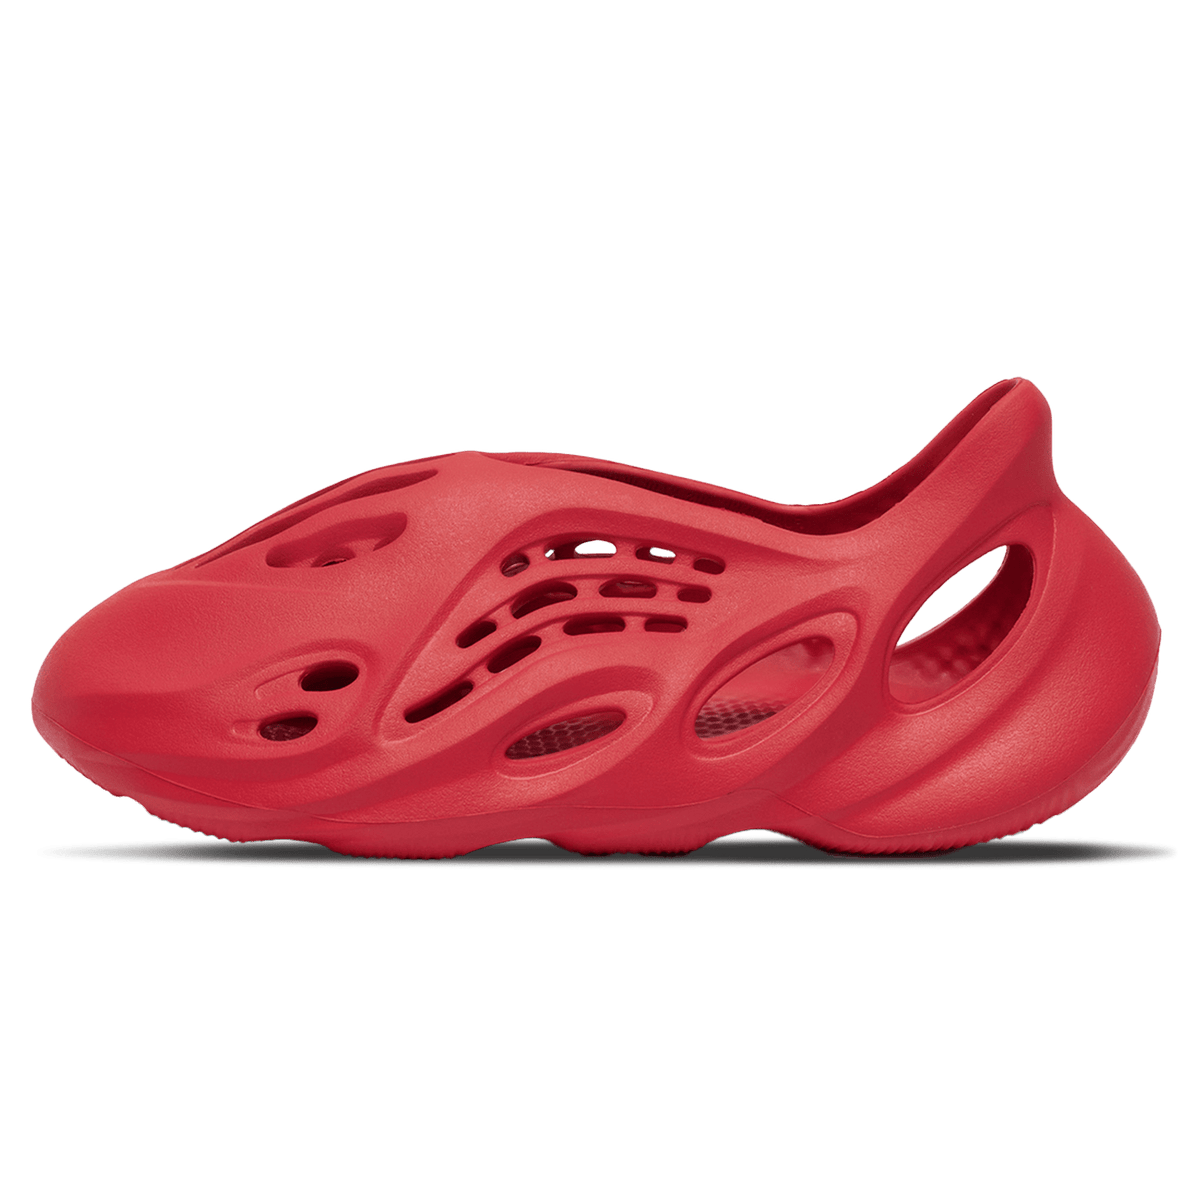 adidas Yeezy Foam Runner 'Vermilion' - JuzsportsShops